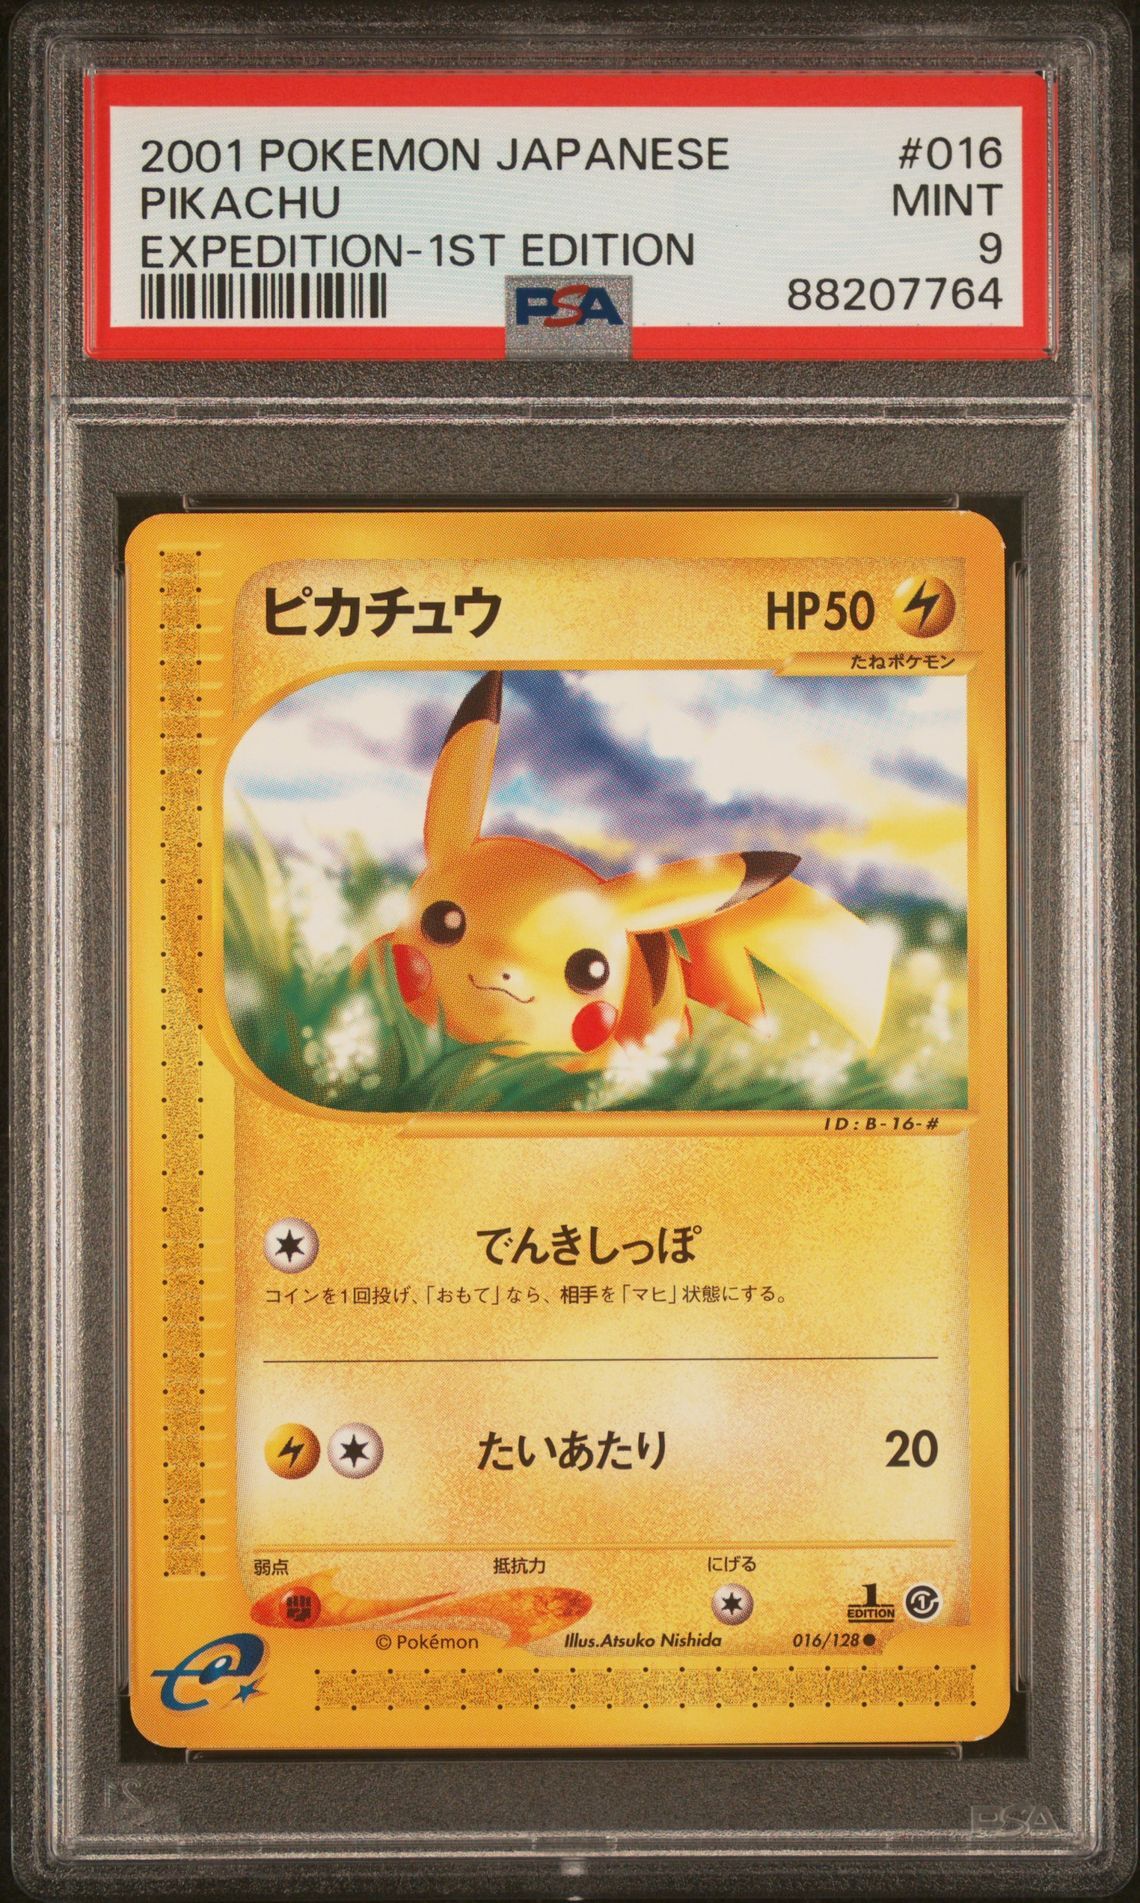 2001 POKEMON JAPANESE EXPEDITION 016 PIKACHU 1ST EDITION - PSA 9 MINT - Pokémon